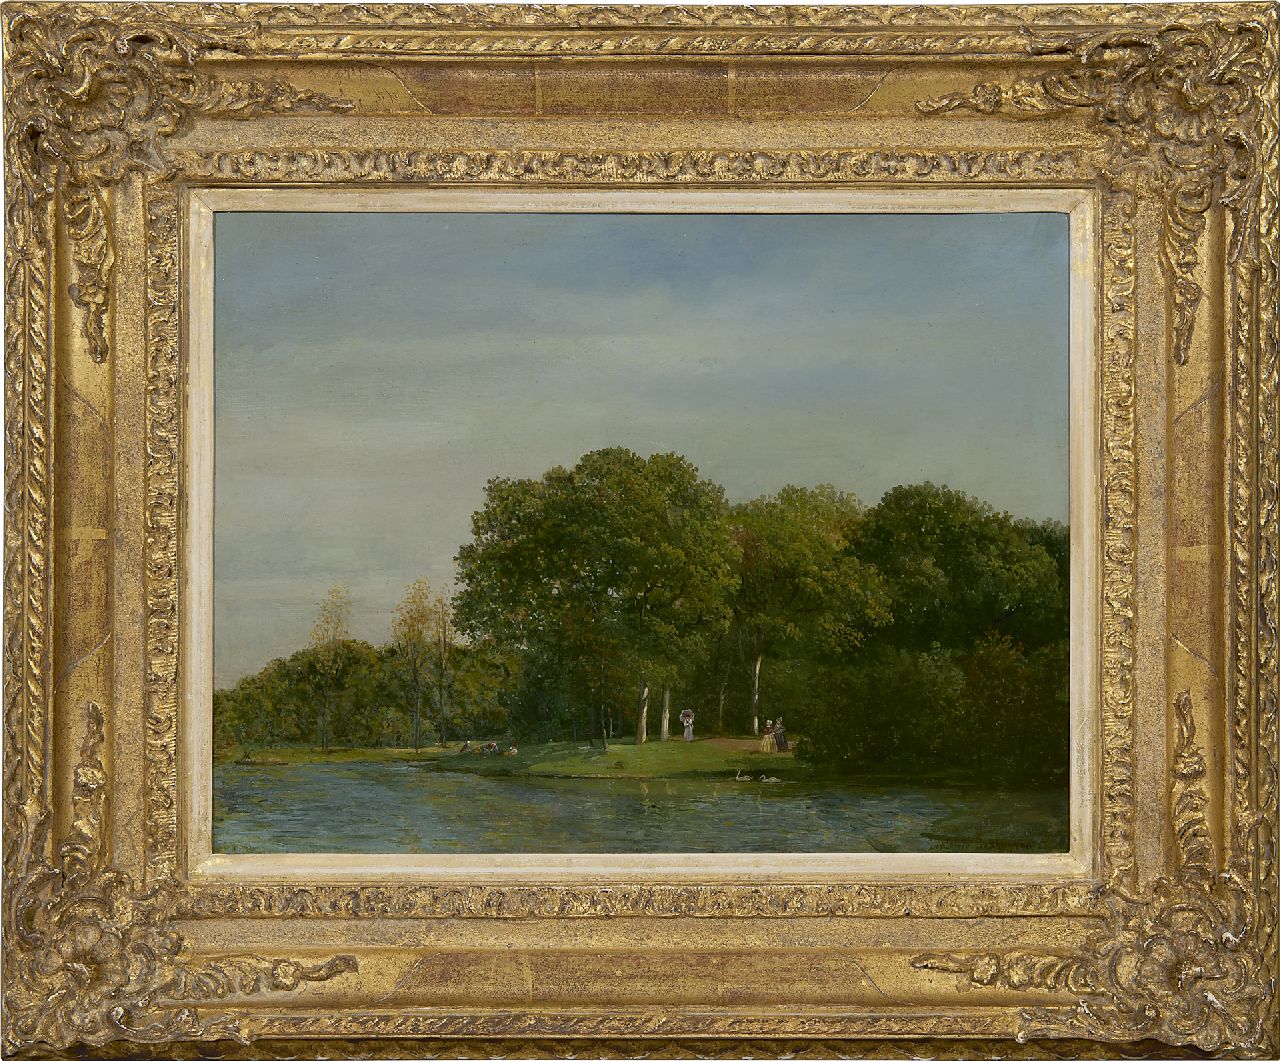 Sande Bakhuyzen J.J. van de | Julius Jacobus van de Sande Bakhuyzen | Schilderijen te koop aangeboden | Parklandschap met elegant gezelschap, olieverf op doek op paneel 26,7 x 35,0 cm, gesigneerd rechtsonder